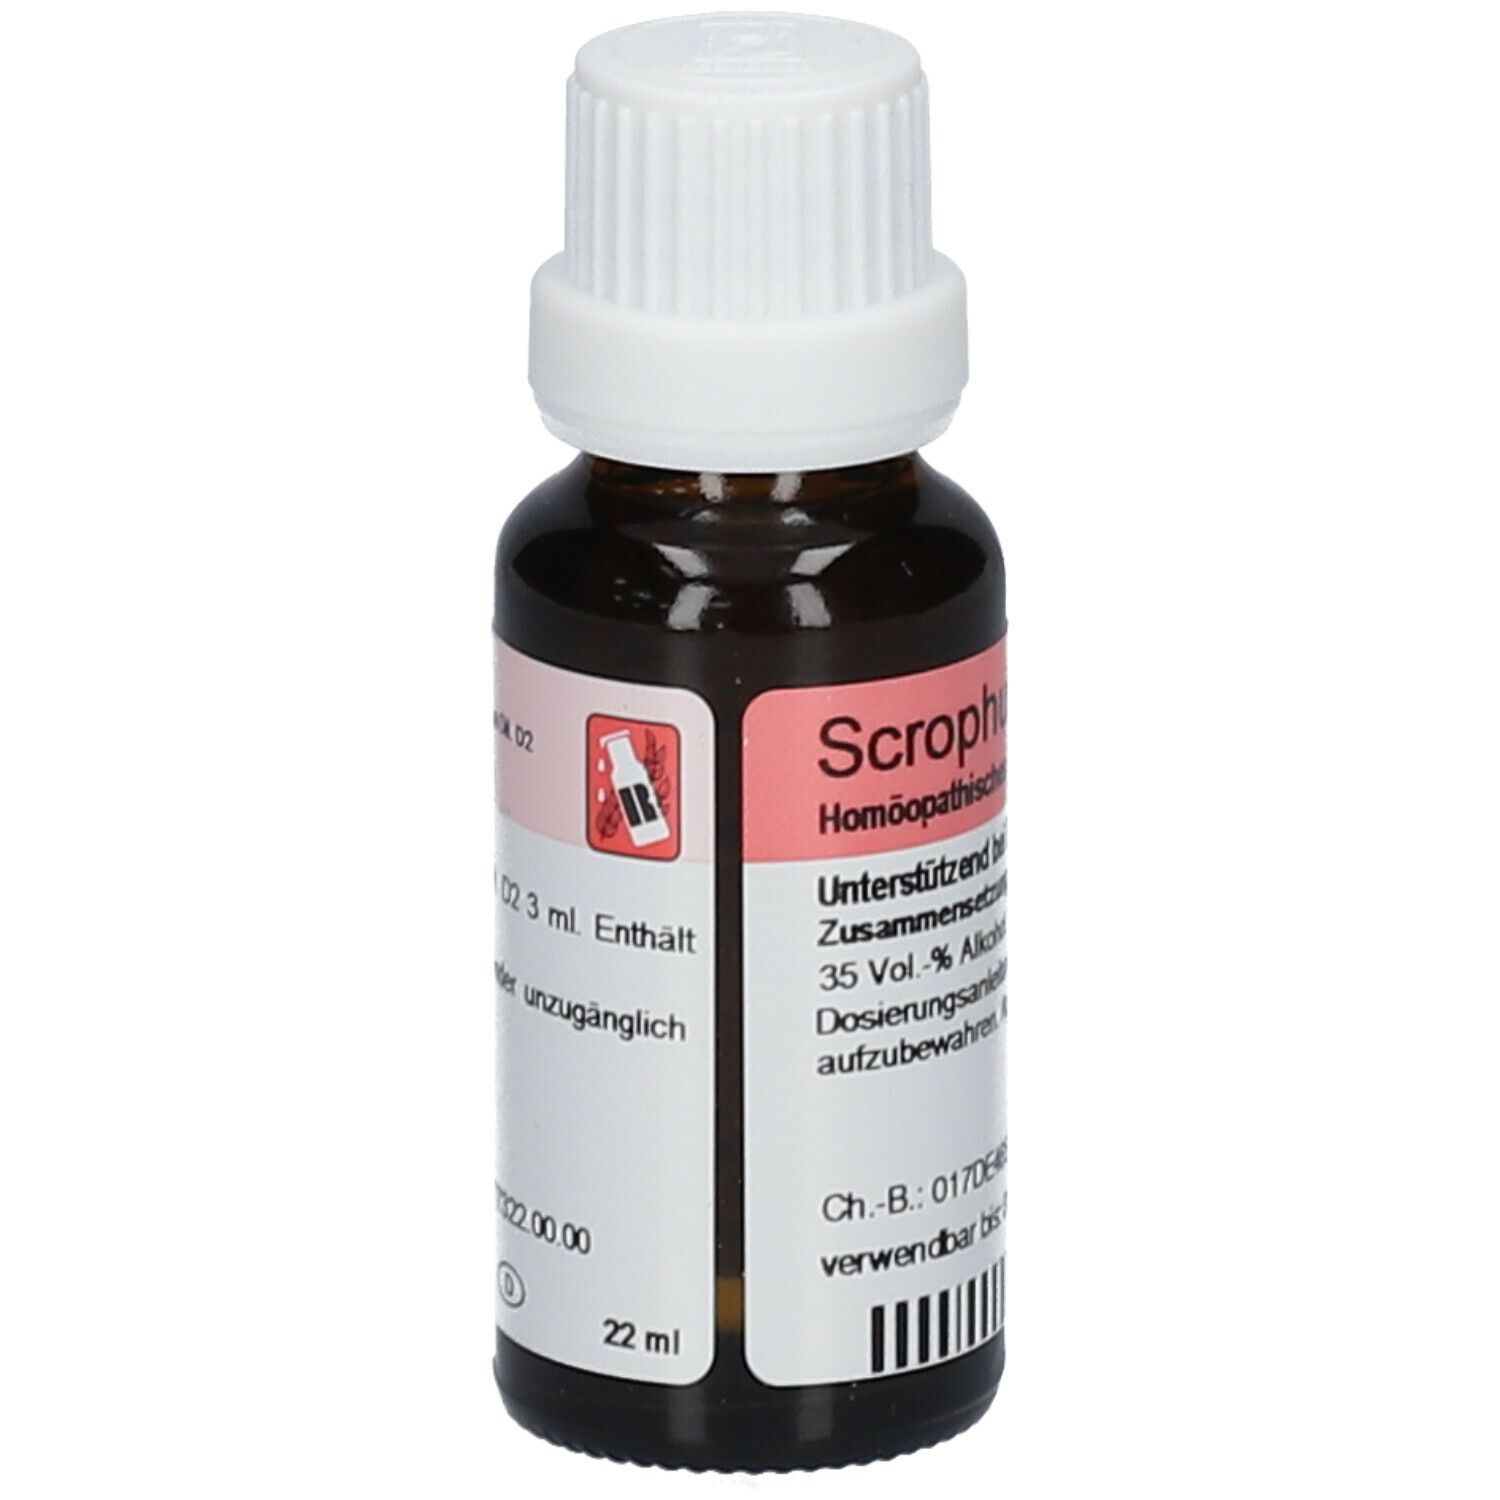 Scrophulae-Gastreu® R17 Tropfen